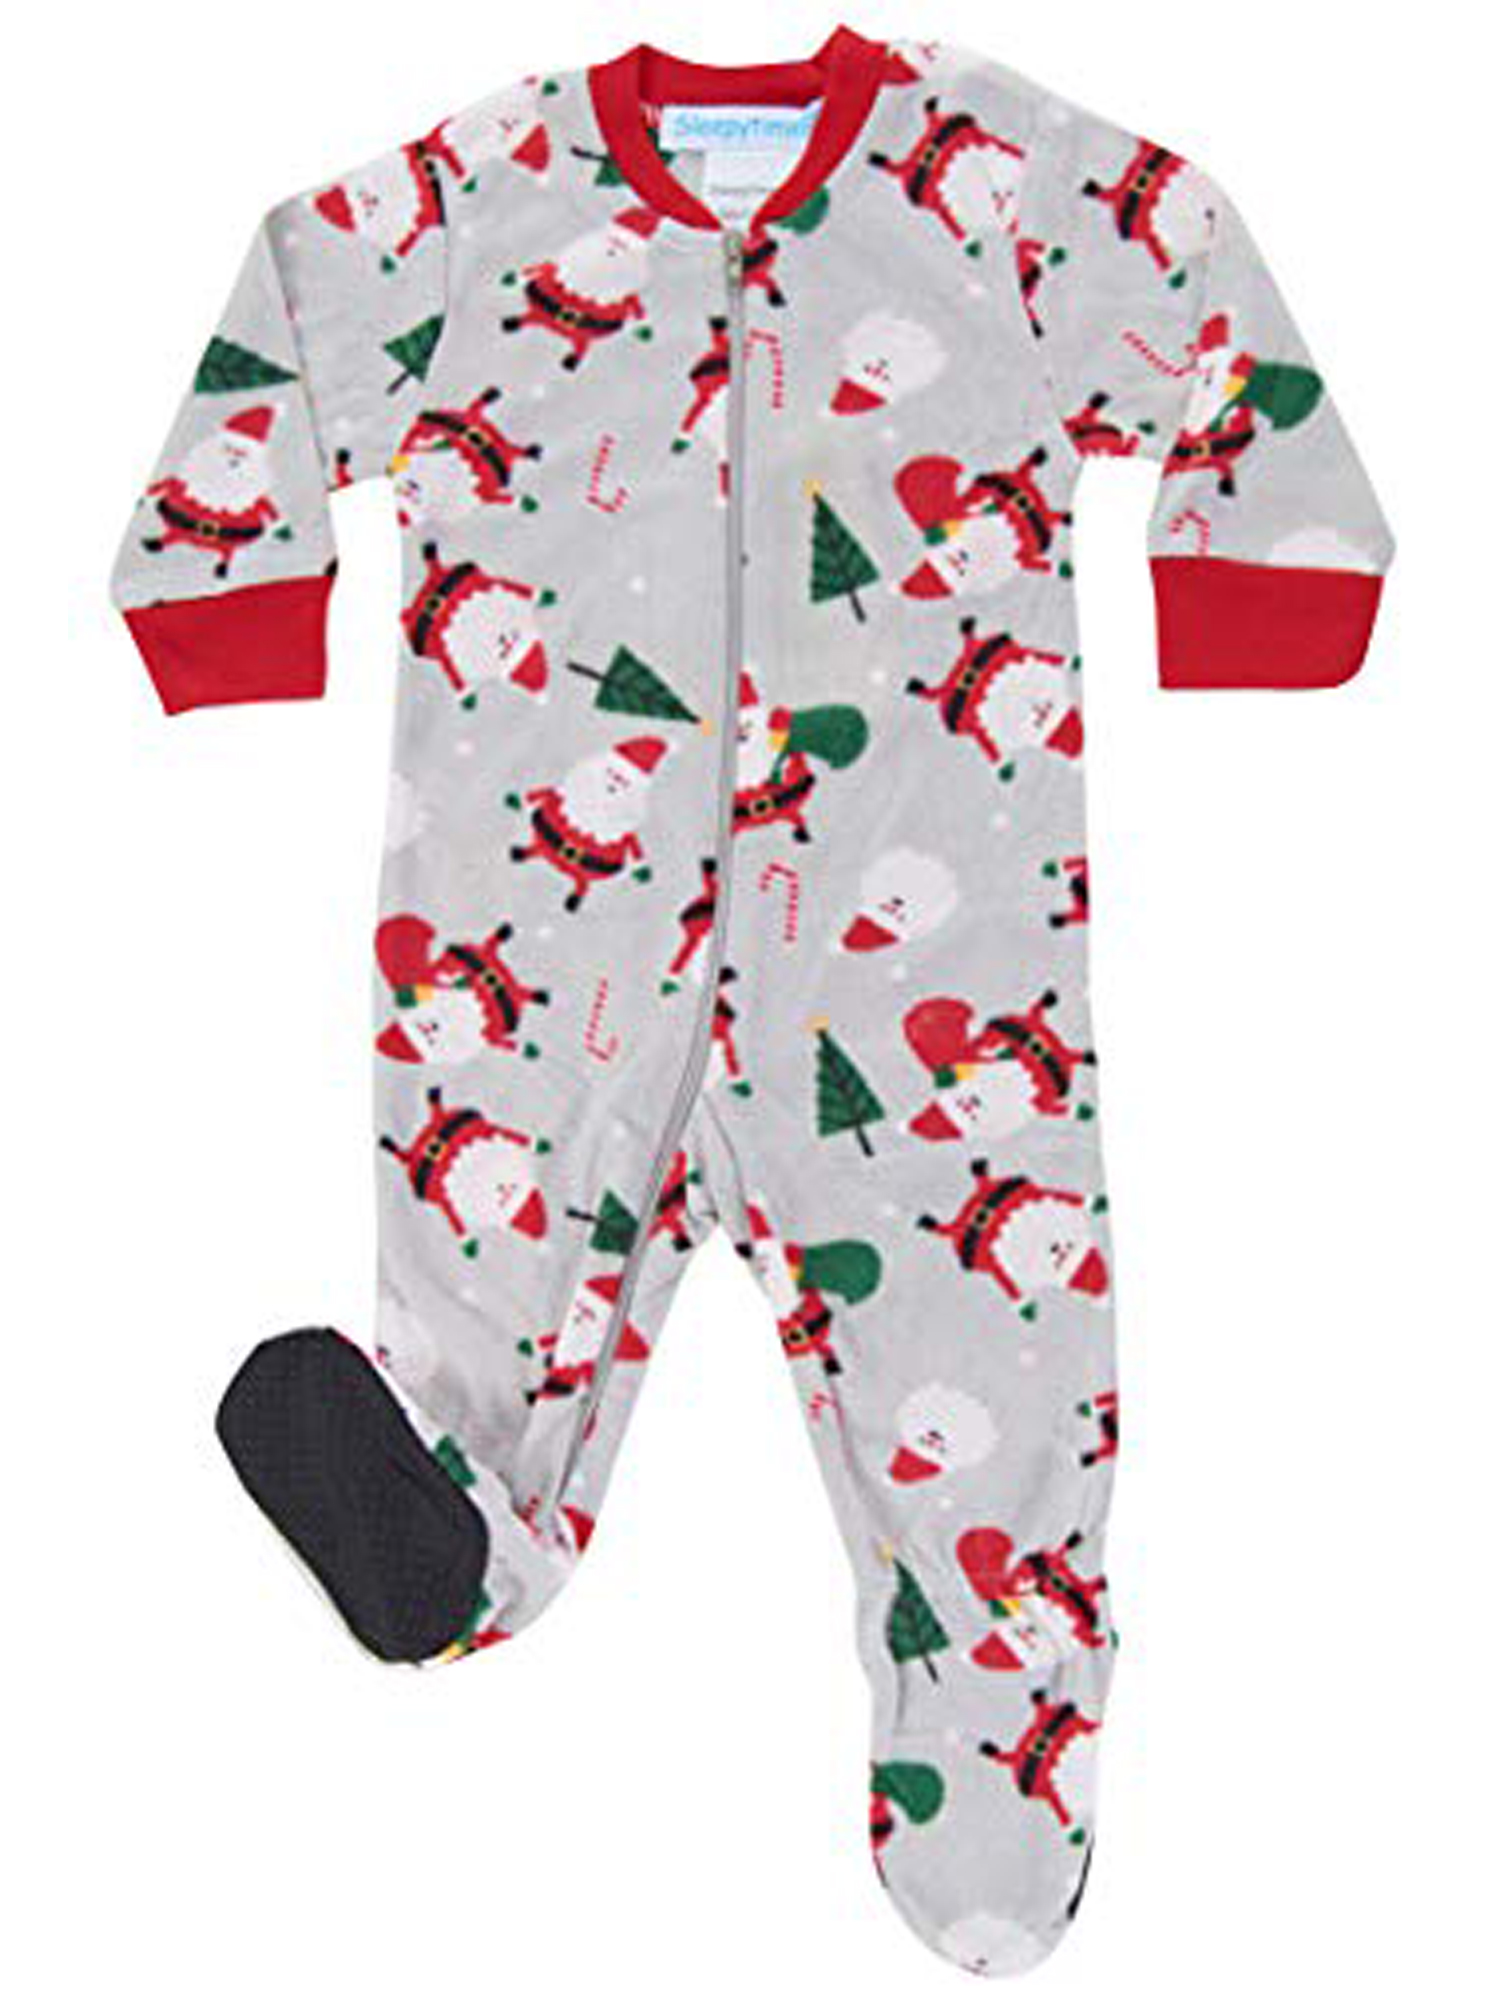 SleepytimePJs Holiday Infant Full-Zip Onesie Baby Pajamas PJs